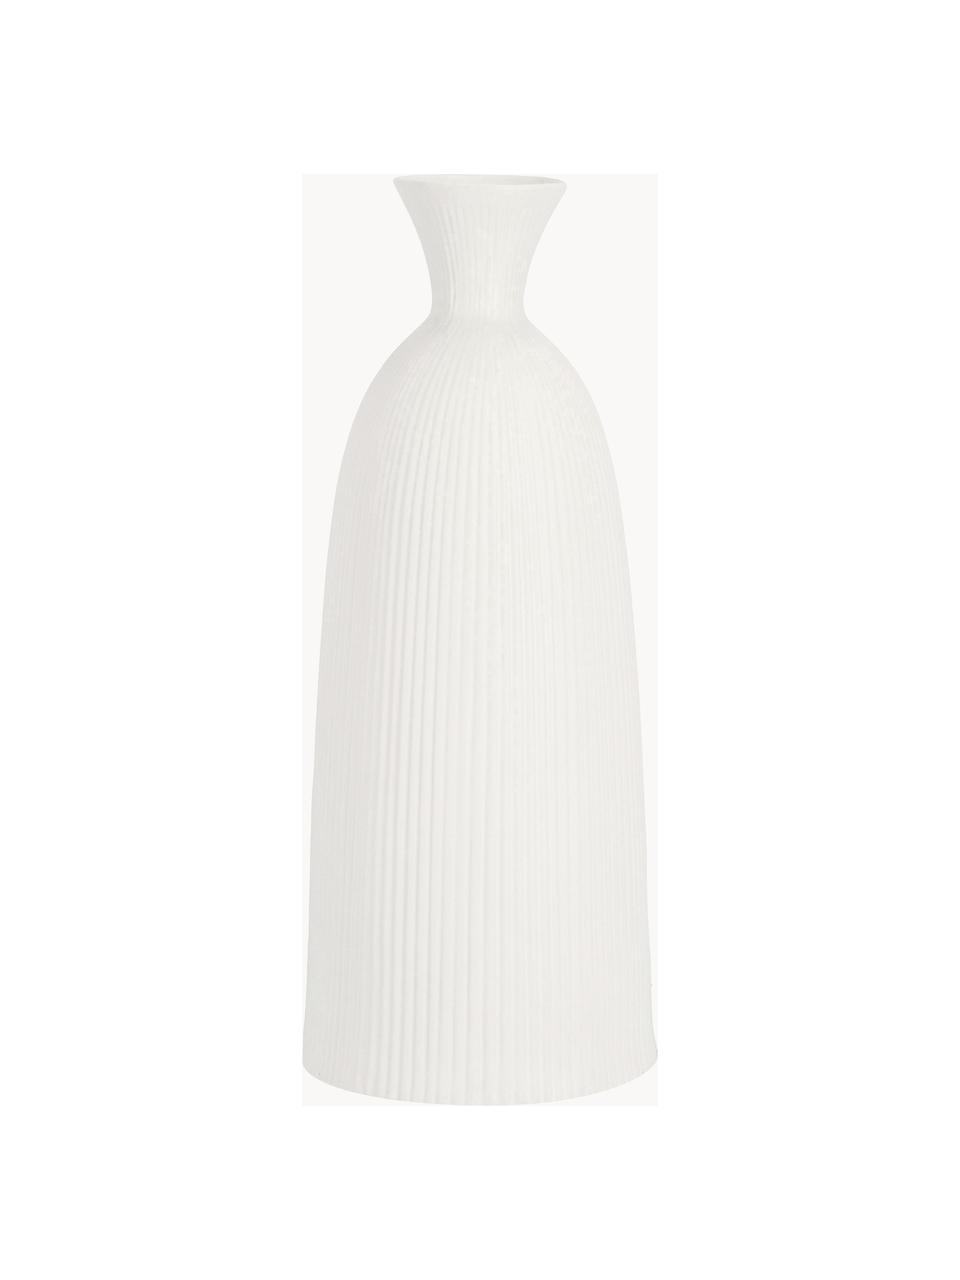 Vaso di design in ceramica Striped, alt. 57 cm, Ceramica, Bianco, Ø 23 x Alt. 57 cm